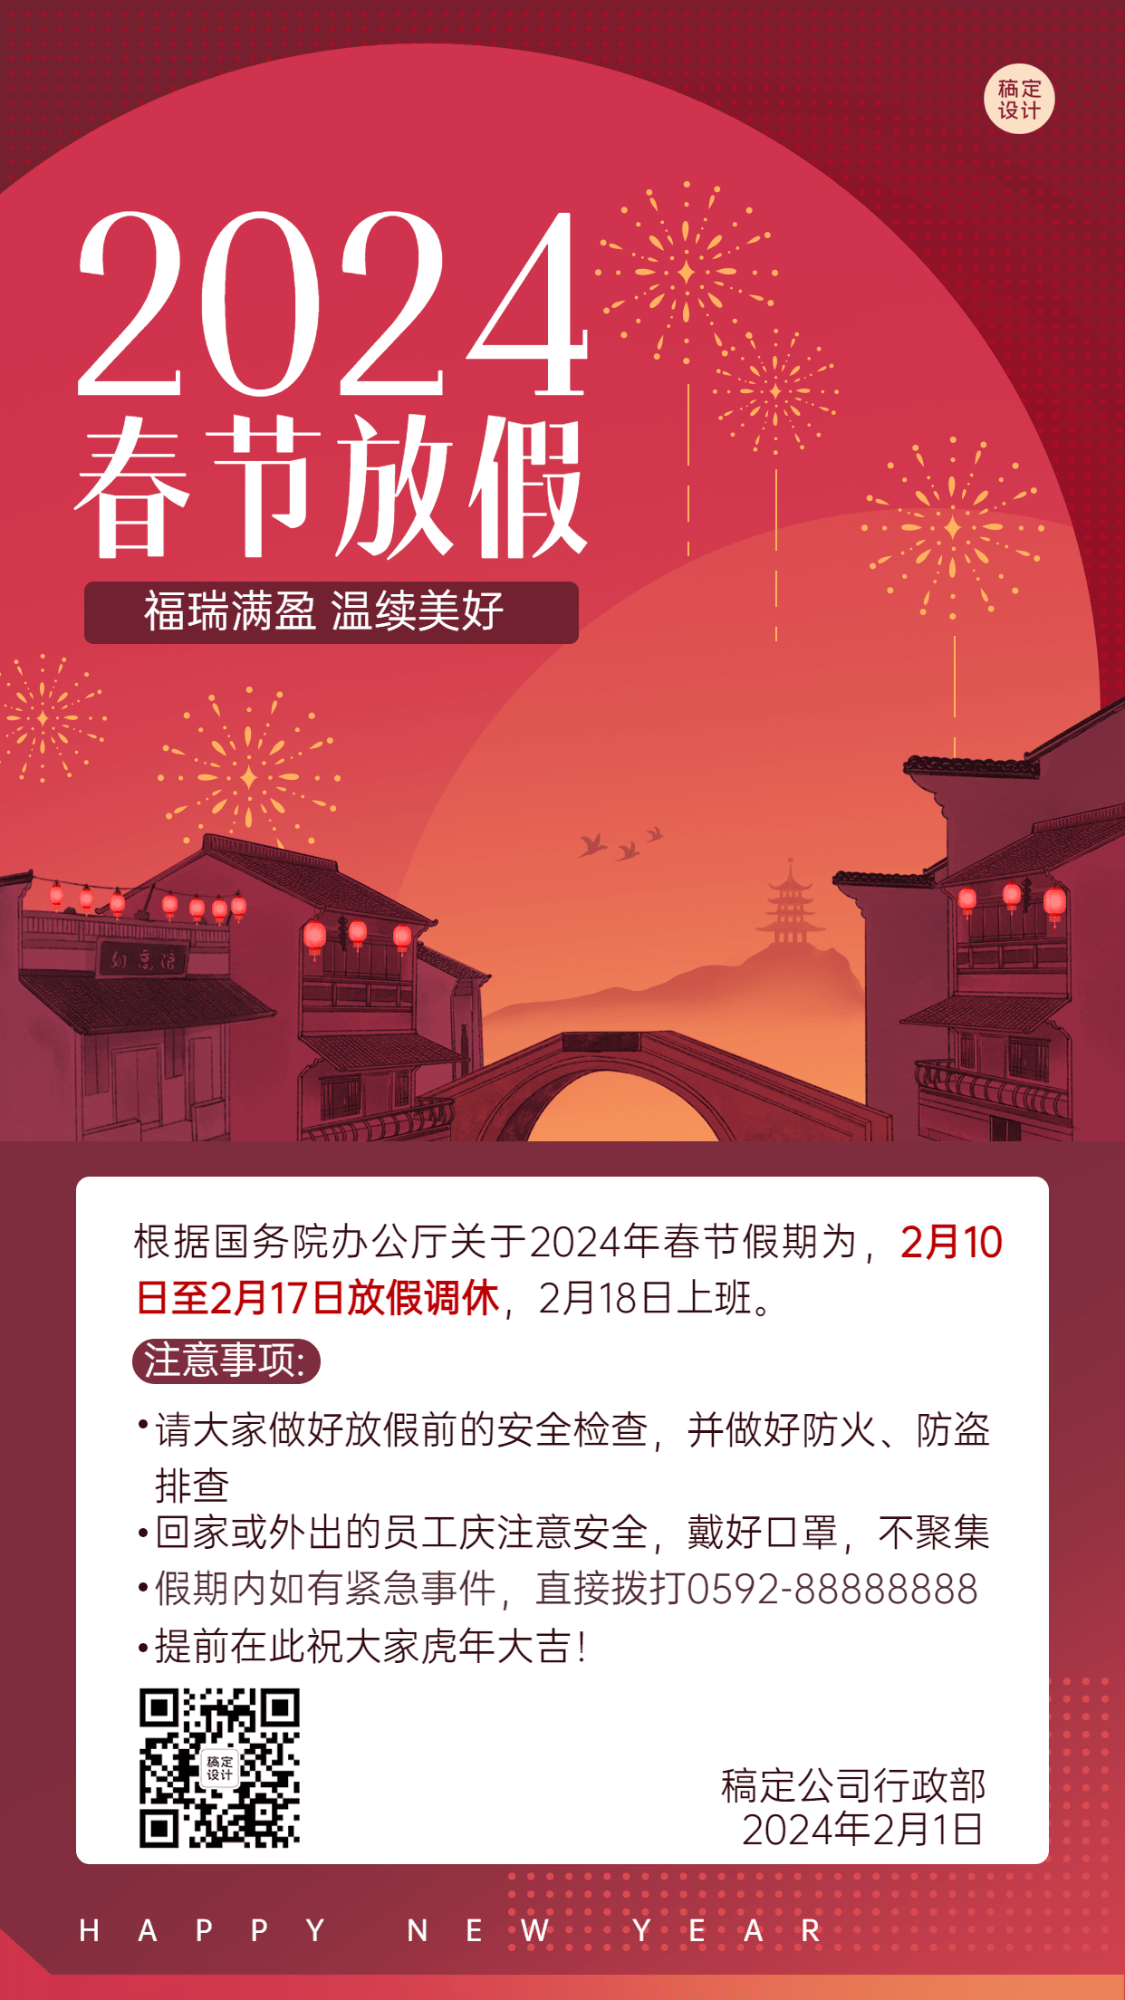 企业春节放假通知海报传统插画